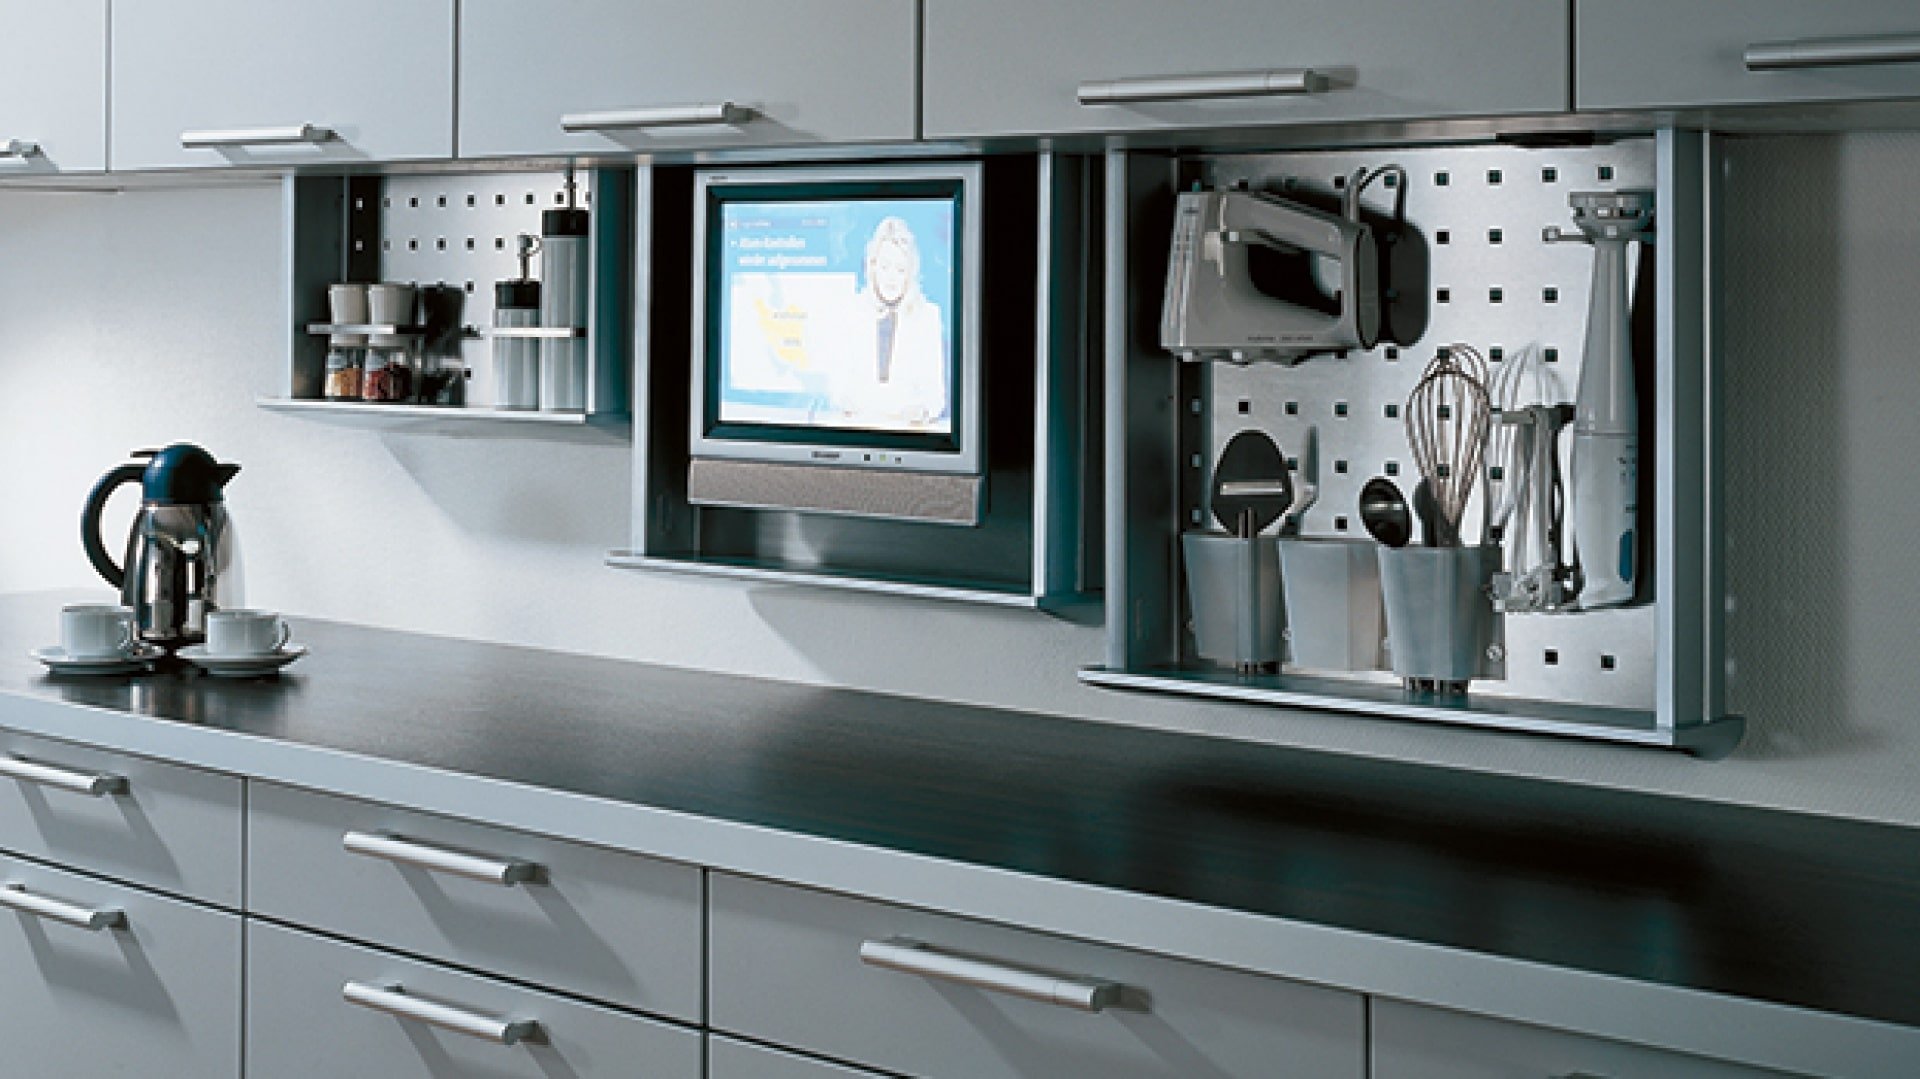 Встроенные кухонные телевизоры. Телевизор встроенный в кухонный шкаф. Выдвижной телевизор на кухне. Кухонный шкаф с телевизором. Встраиваемый телевизор для кухни.